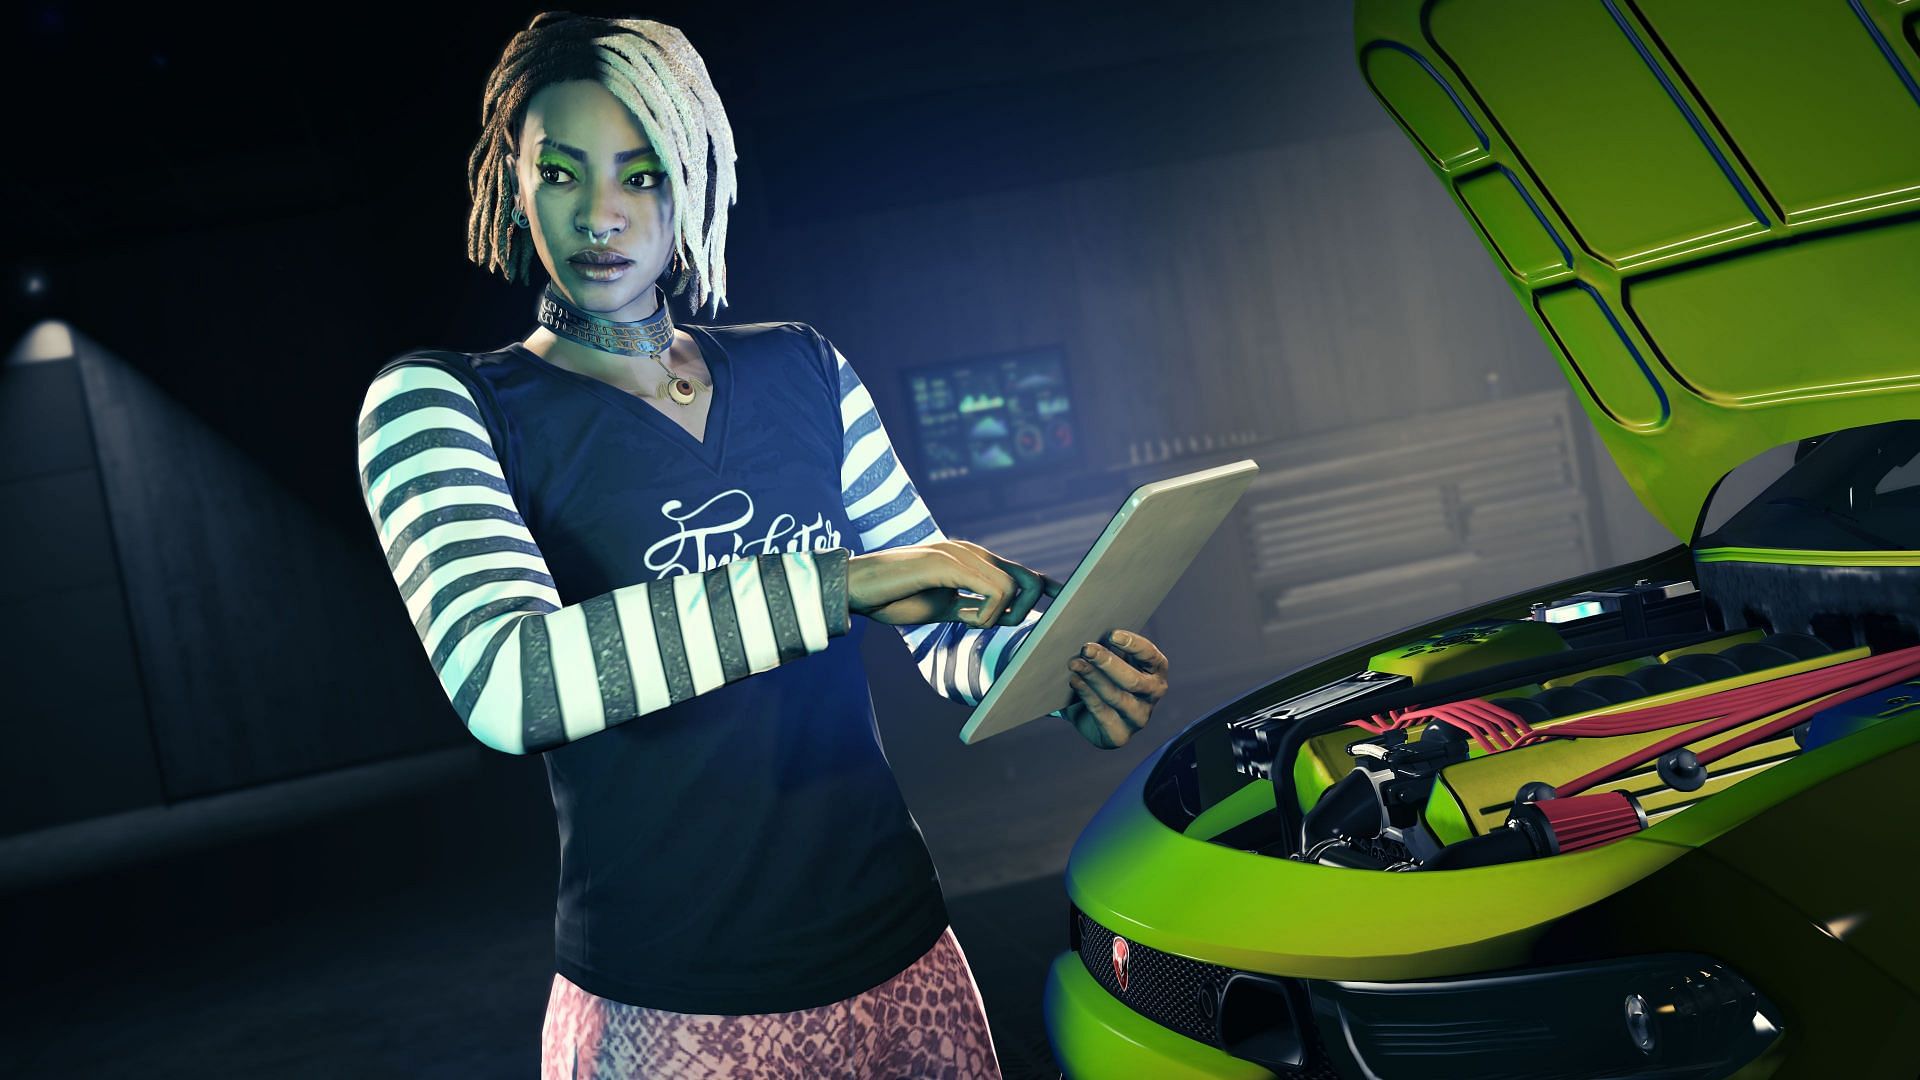 Imani in Grand Theft Auto Online (Image via Rockstar Games)